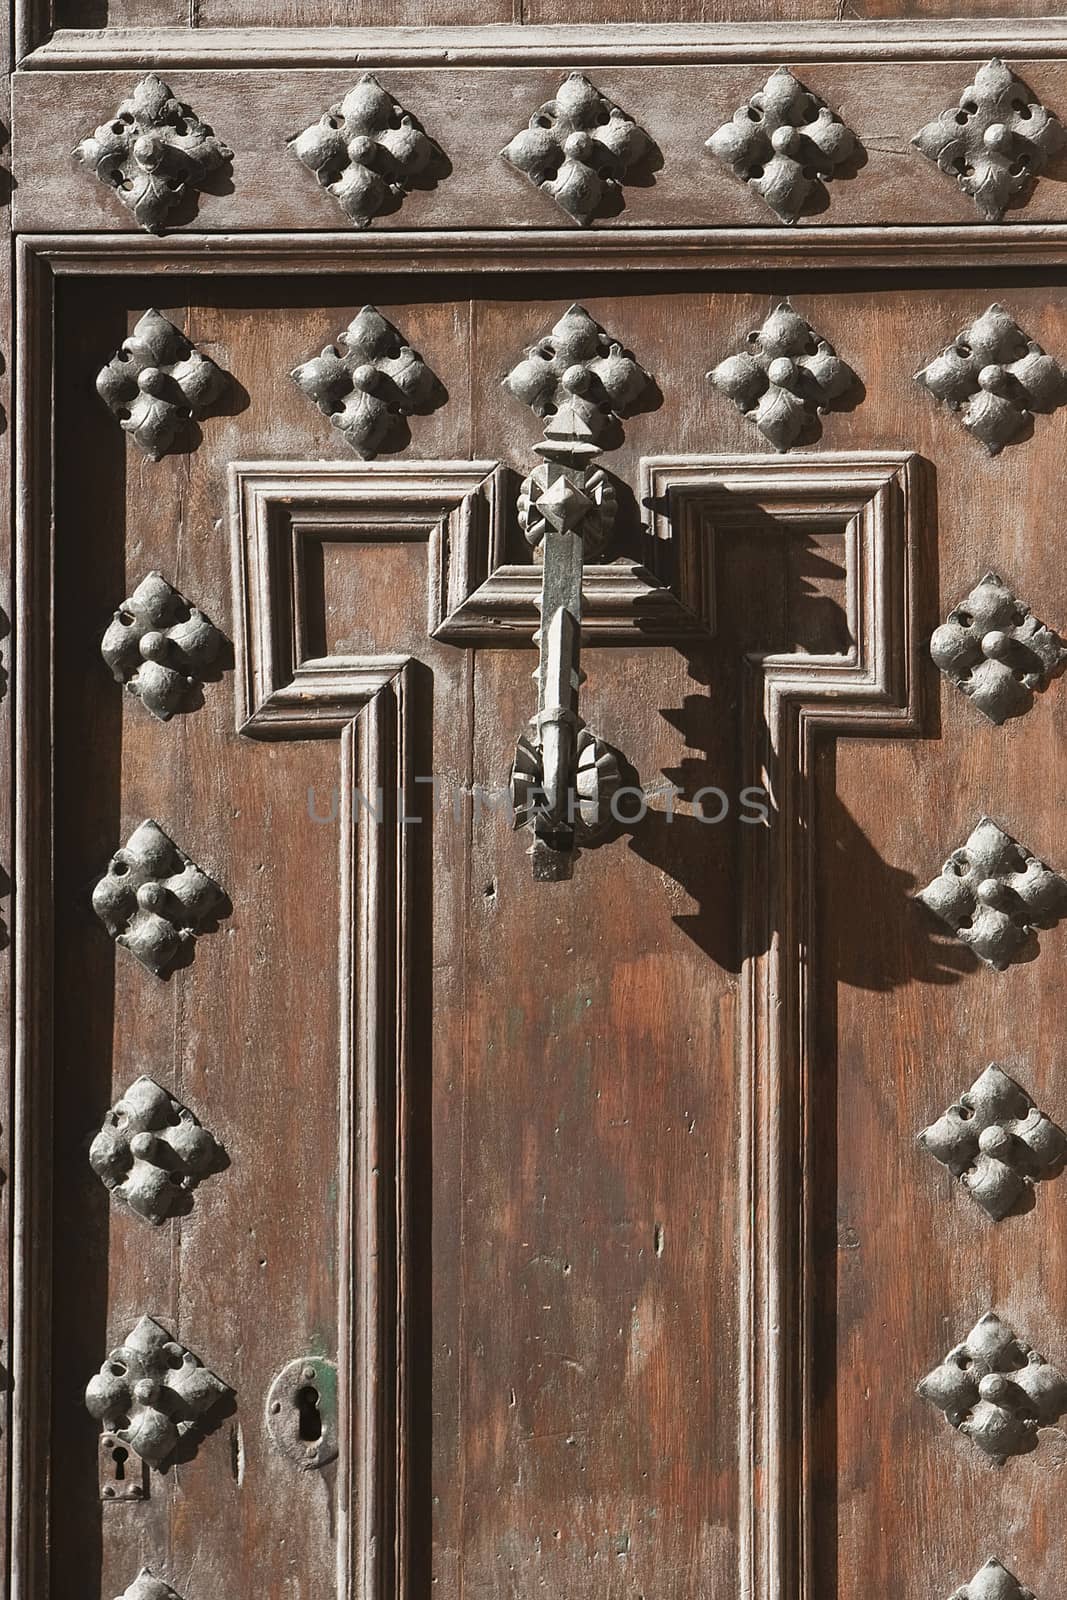 an old metal door handle knocker, Spain